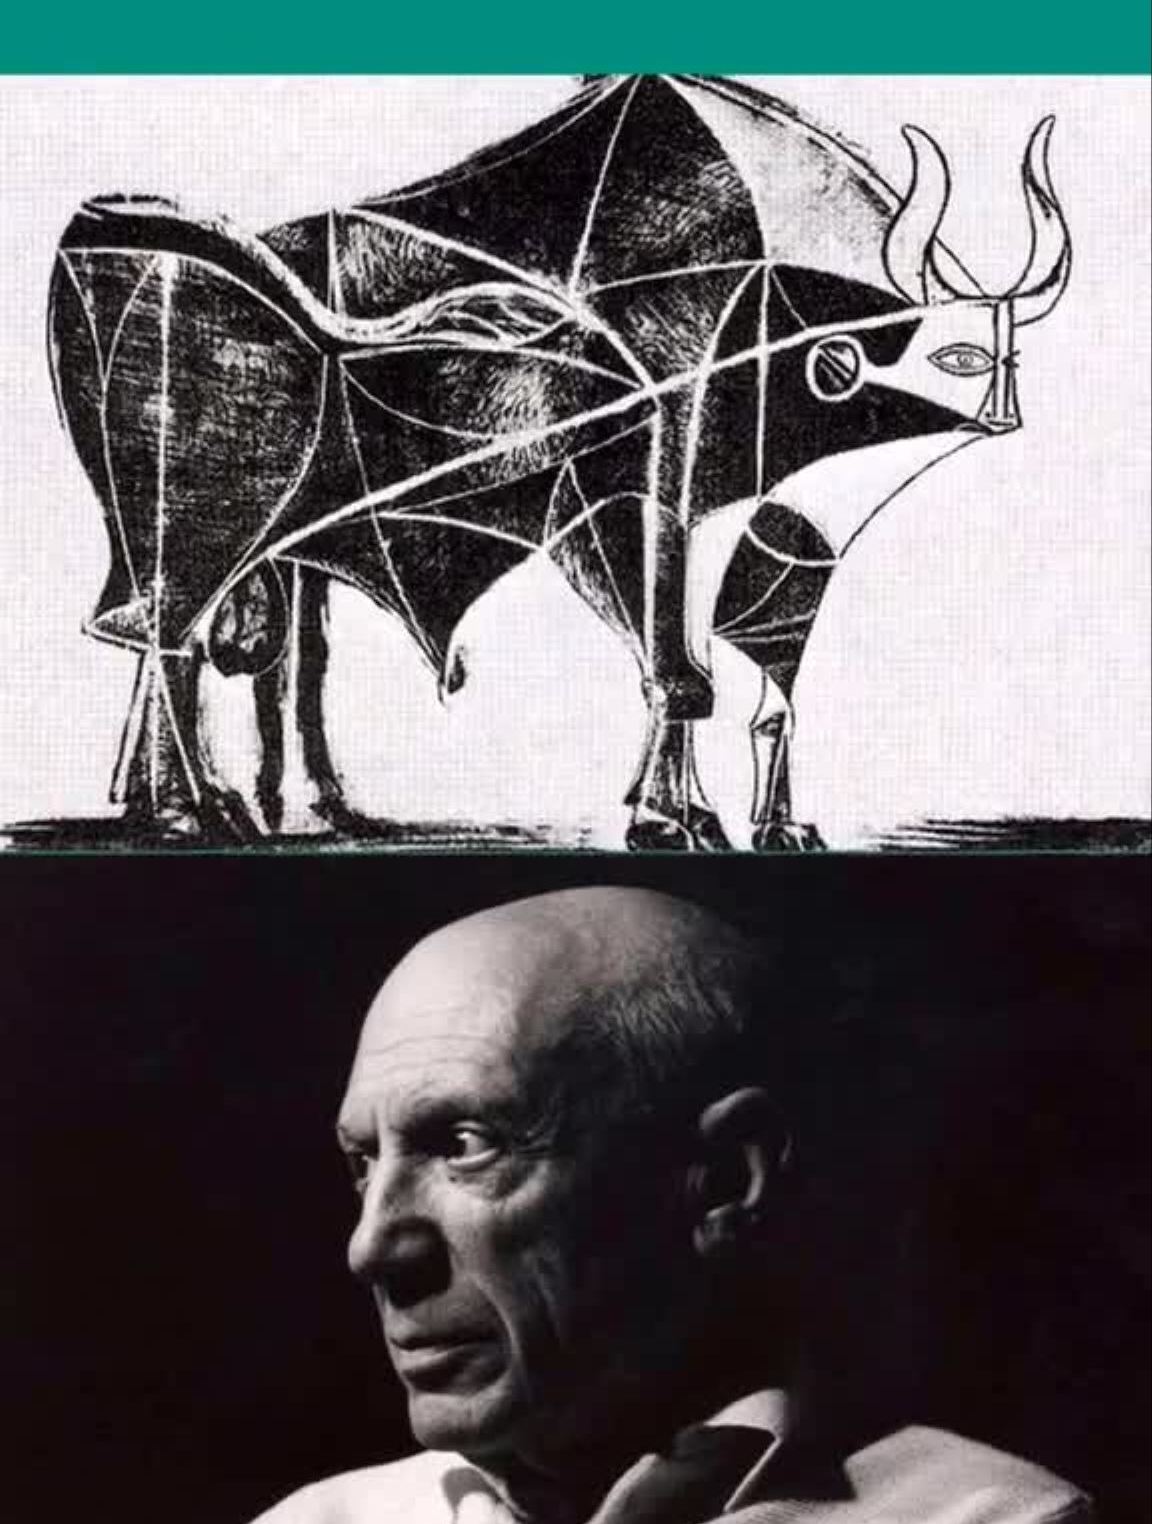 毕加索的牛的变形图片